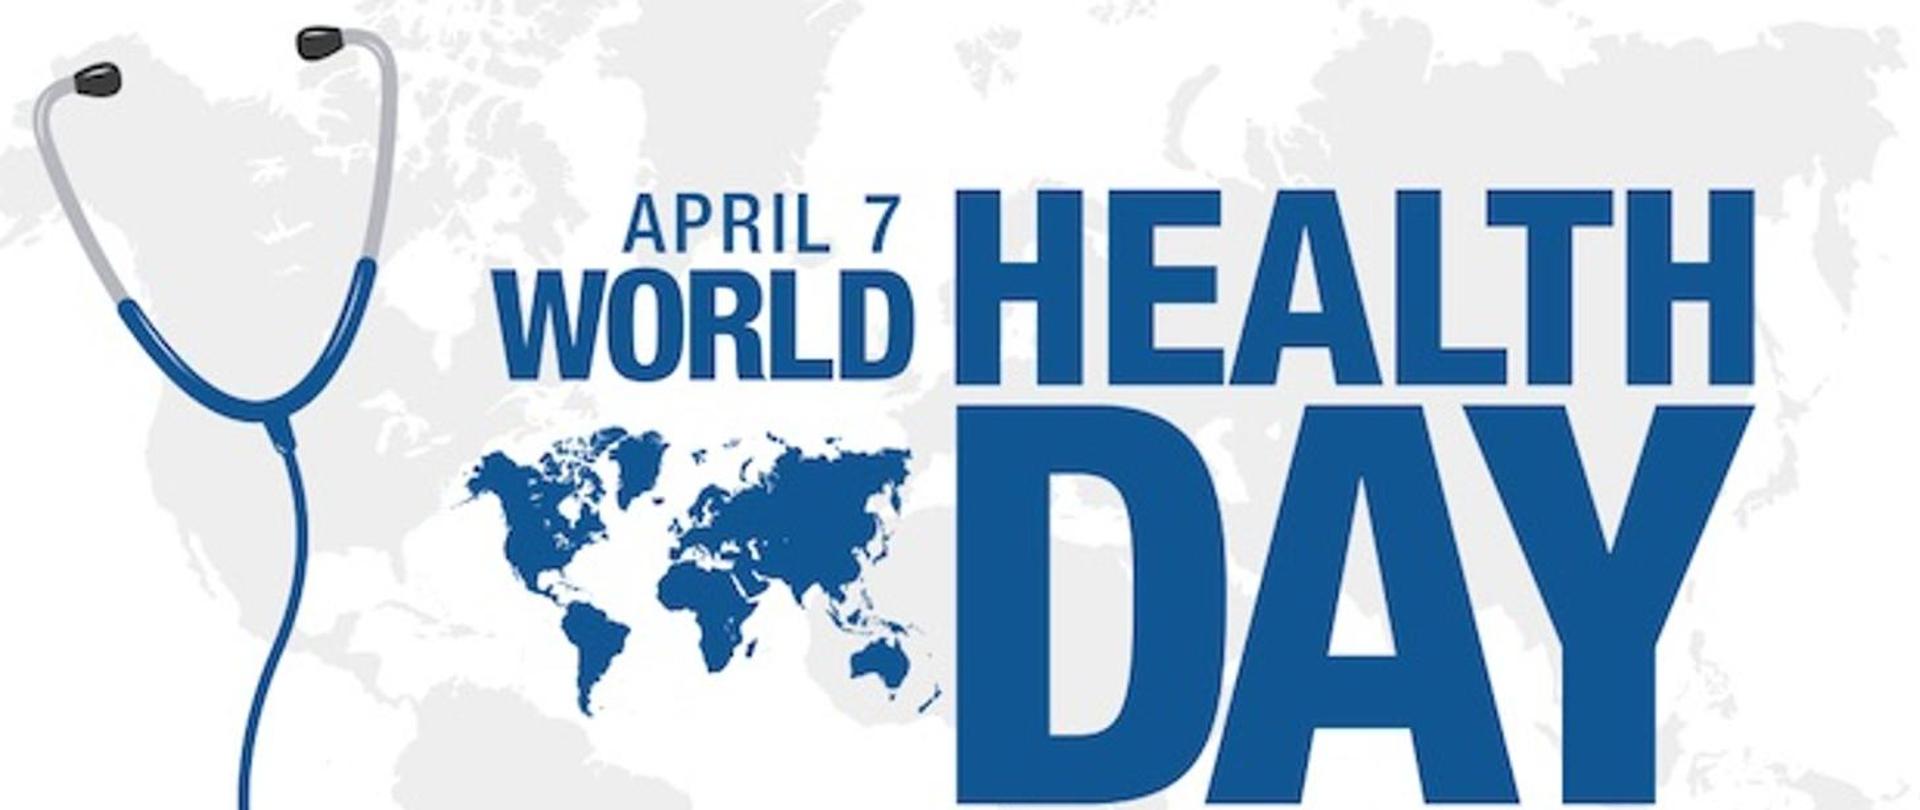 W tle grafiki mapa świata. Umieszczono na nim grafikę stetoskopu oraz napis "APRIL 7 - WORLD HEALTH DAY".